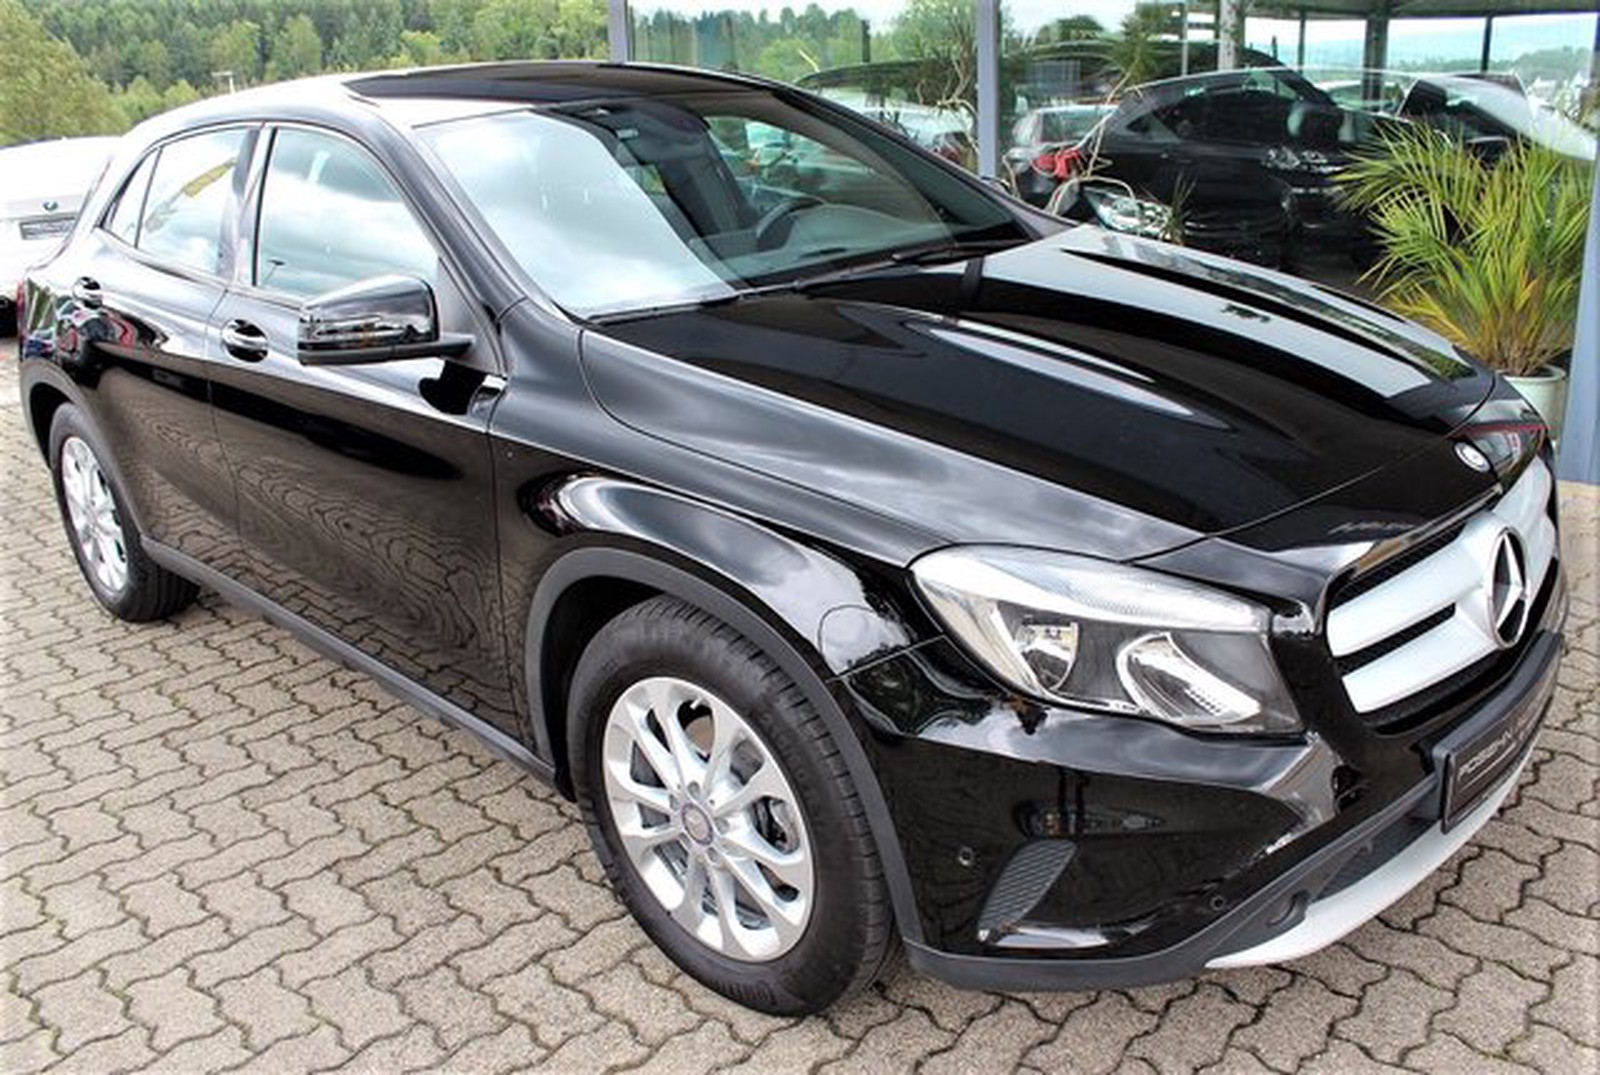 Mercedes Benz Gla 2 Cdi 7g Dct Navi Harman Kardon Euro 6 Gebraucht Kaufen In Hechingen Bechtoldsweiler Preis Eur Int Nr 990 Verkauft